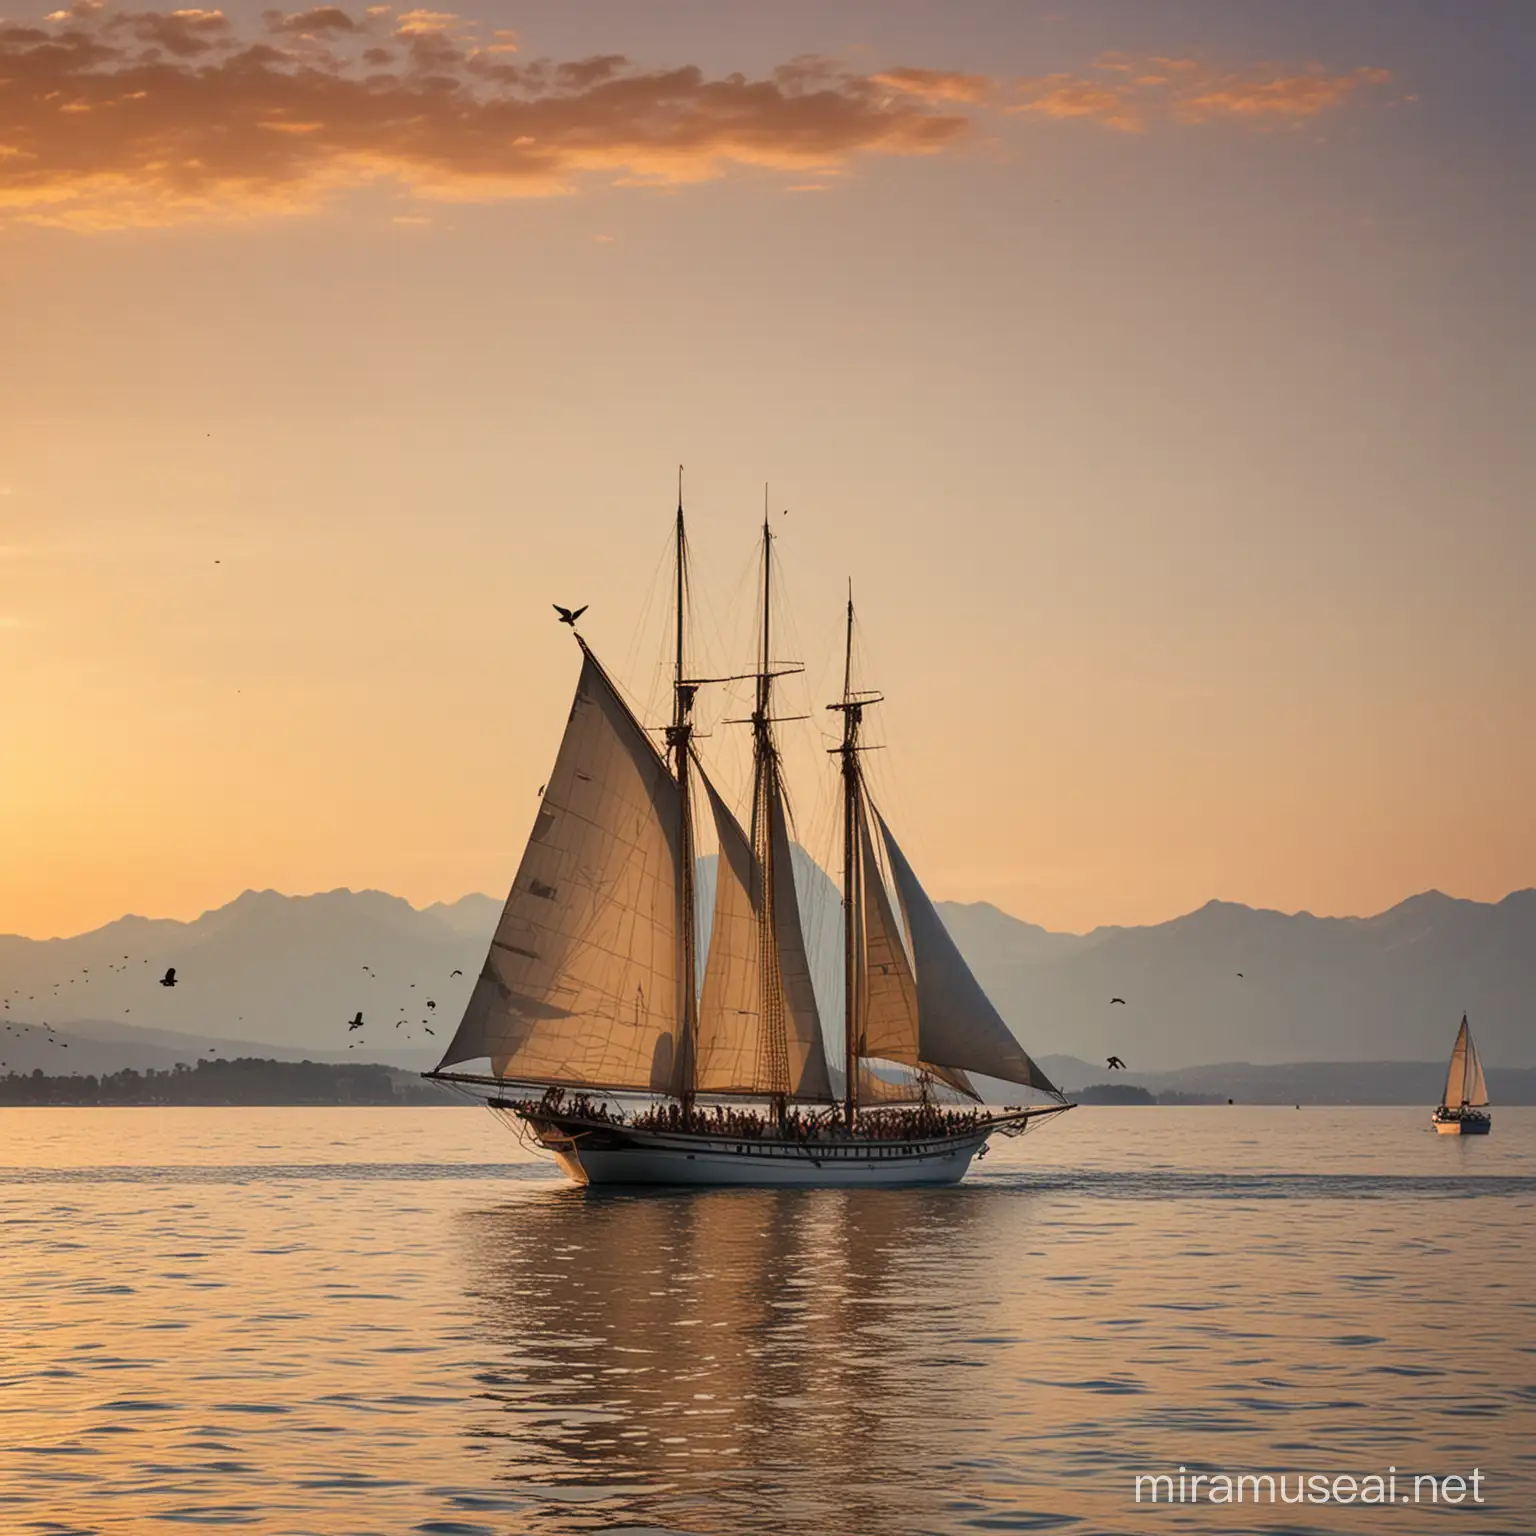 Majestic 4Masted Wooden Sailboat Sailing on Lake Geneva at Sunset Surrounded by Birds